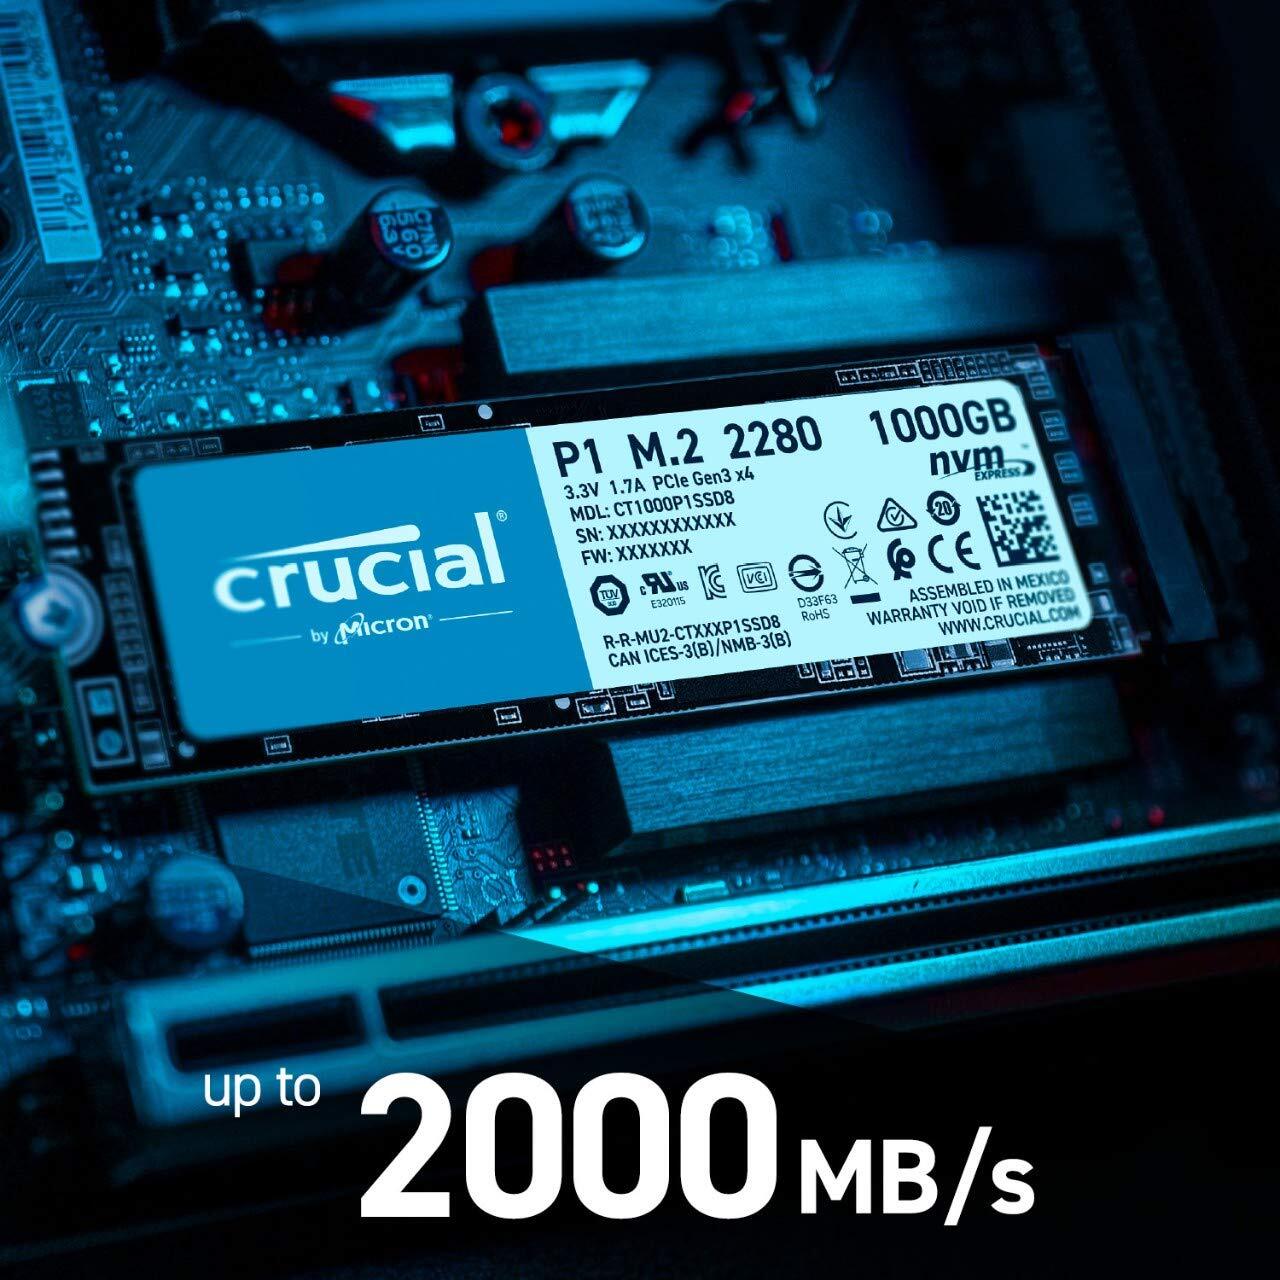 CRUCIAL P1 500GB 3D NAND NVMe PCIe M.2 SSD (CT500P1SSD8)-M000000000597 www.mysocially.com